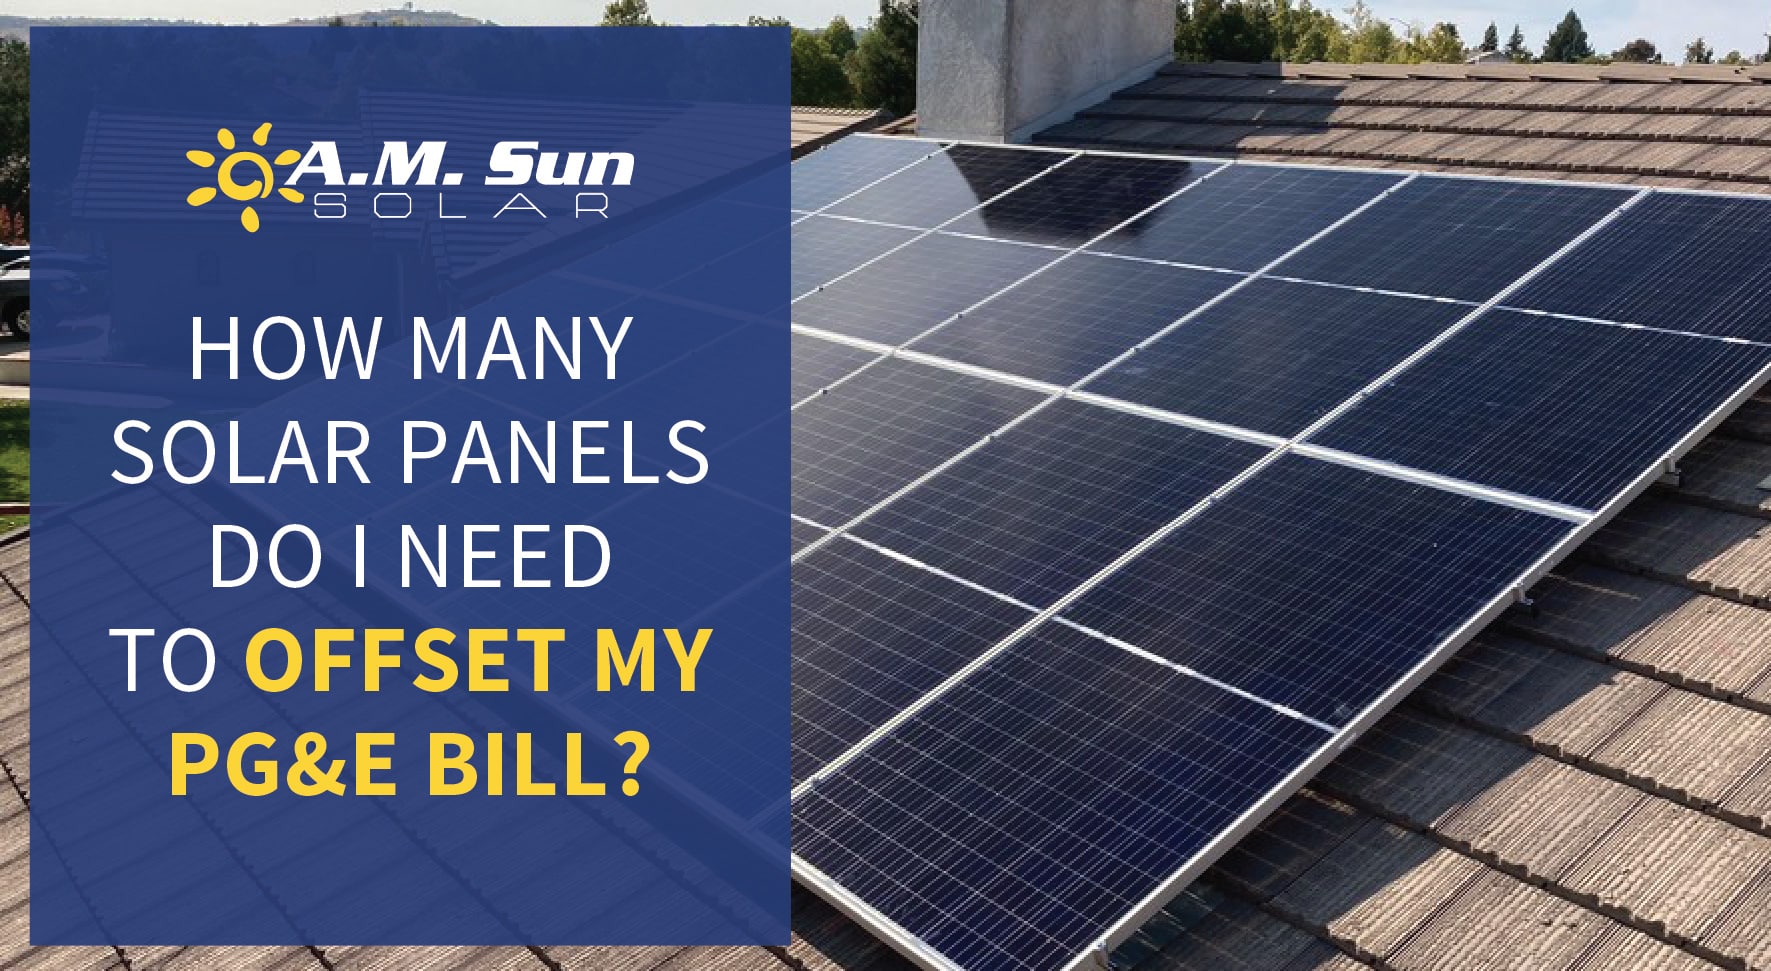 How Many Solar Panels Do You Need?